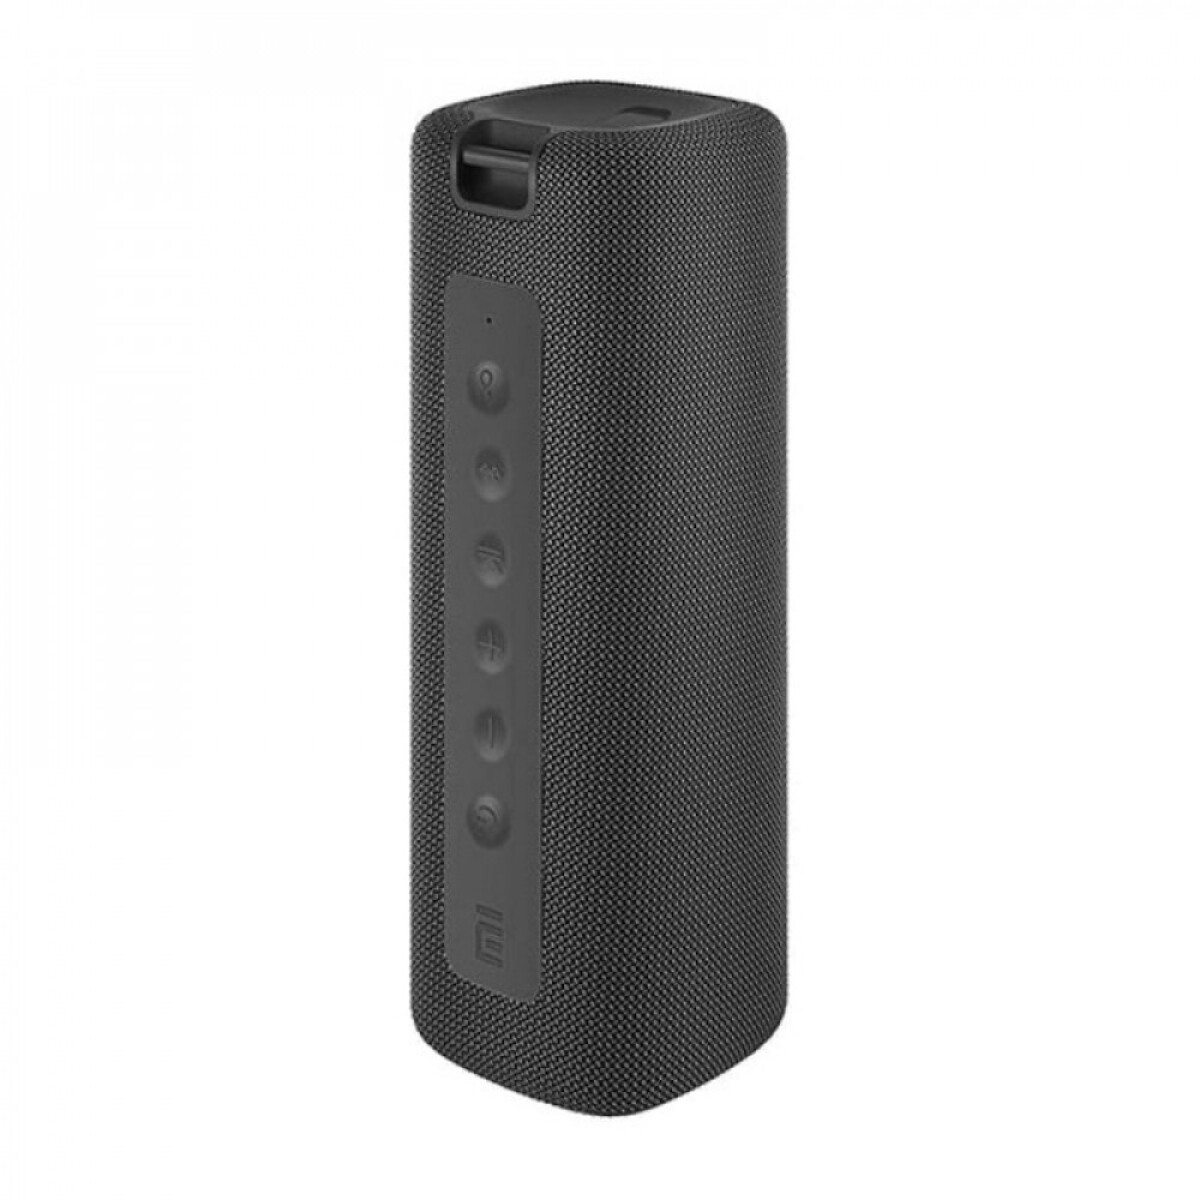 Mi portable bt speaker 16w waterproof - Black 